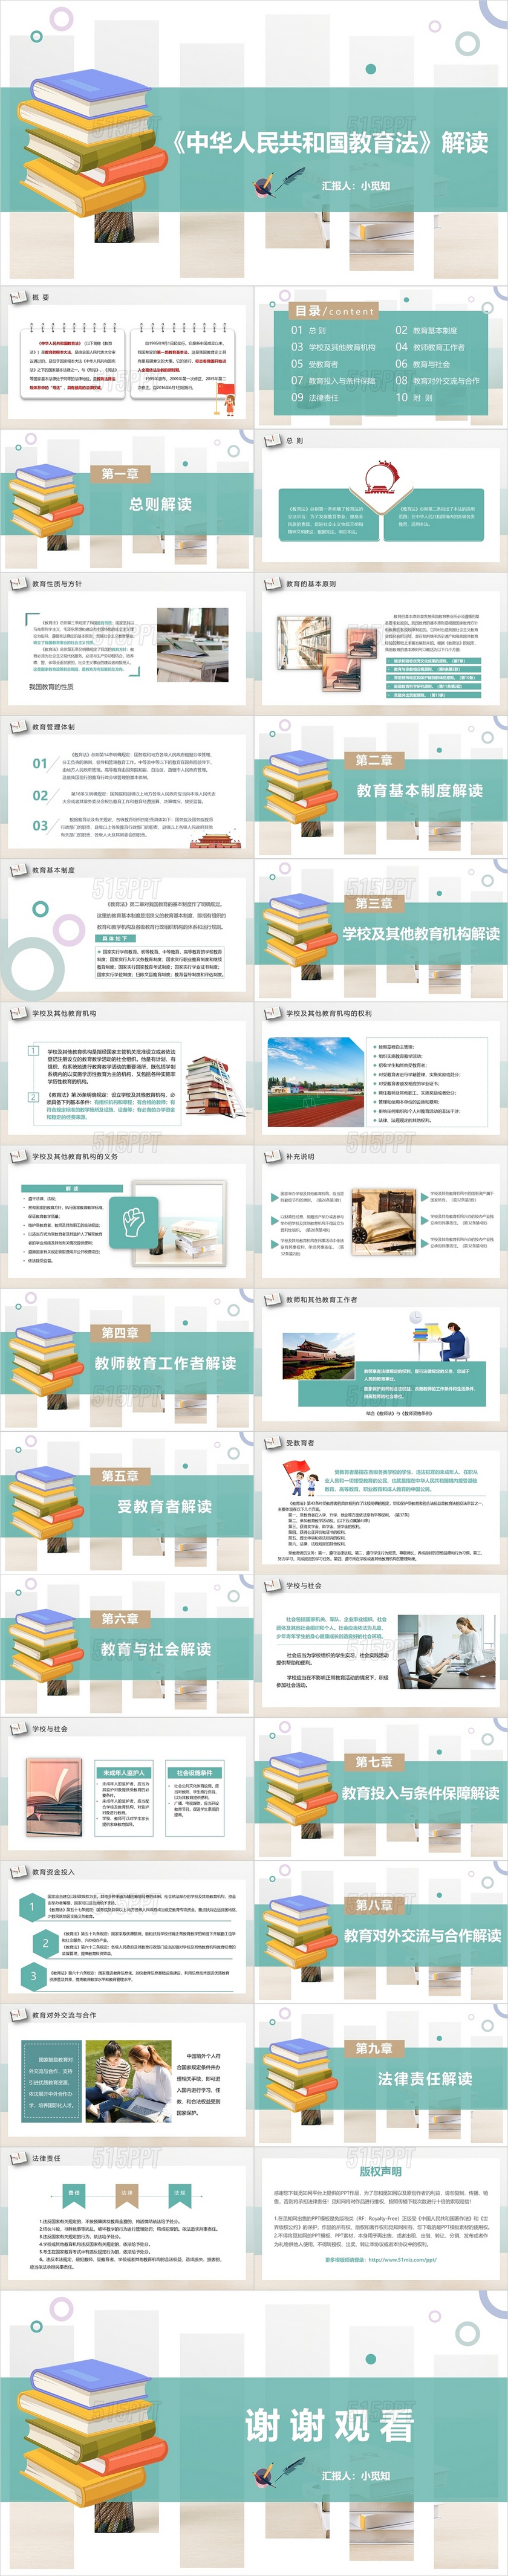 绿色清新简约中华人民共和国教育法解读动态PPT模板